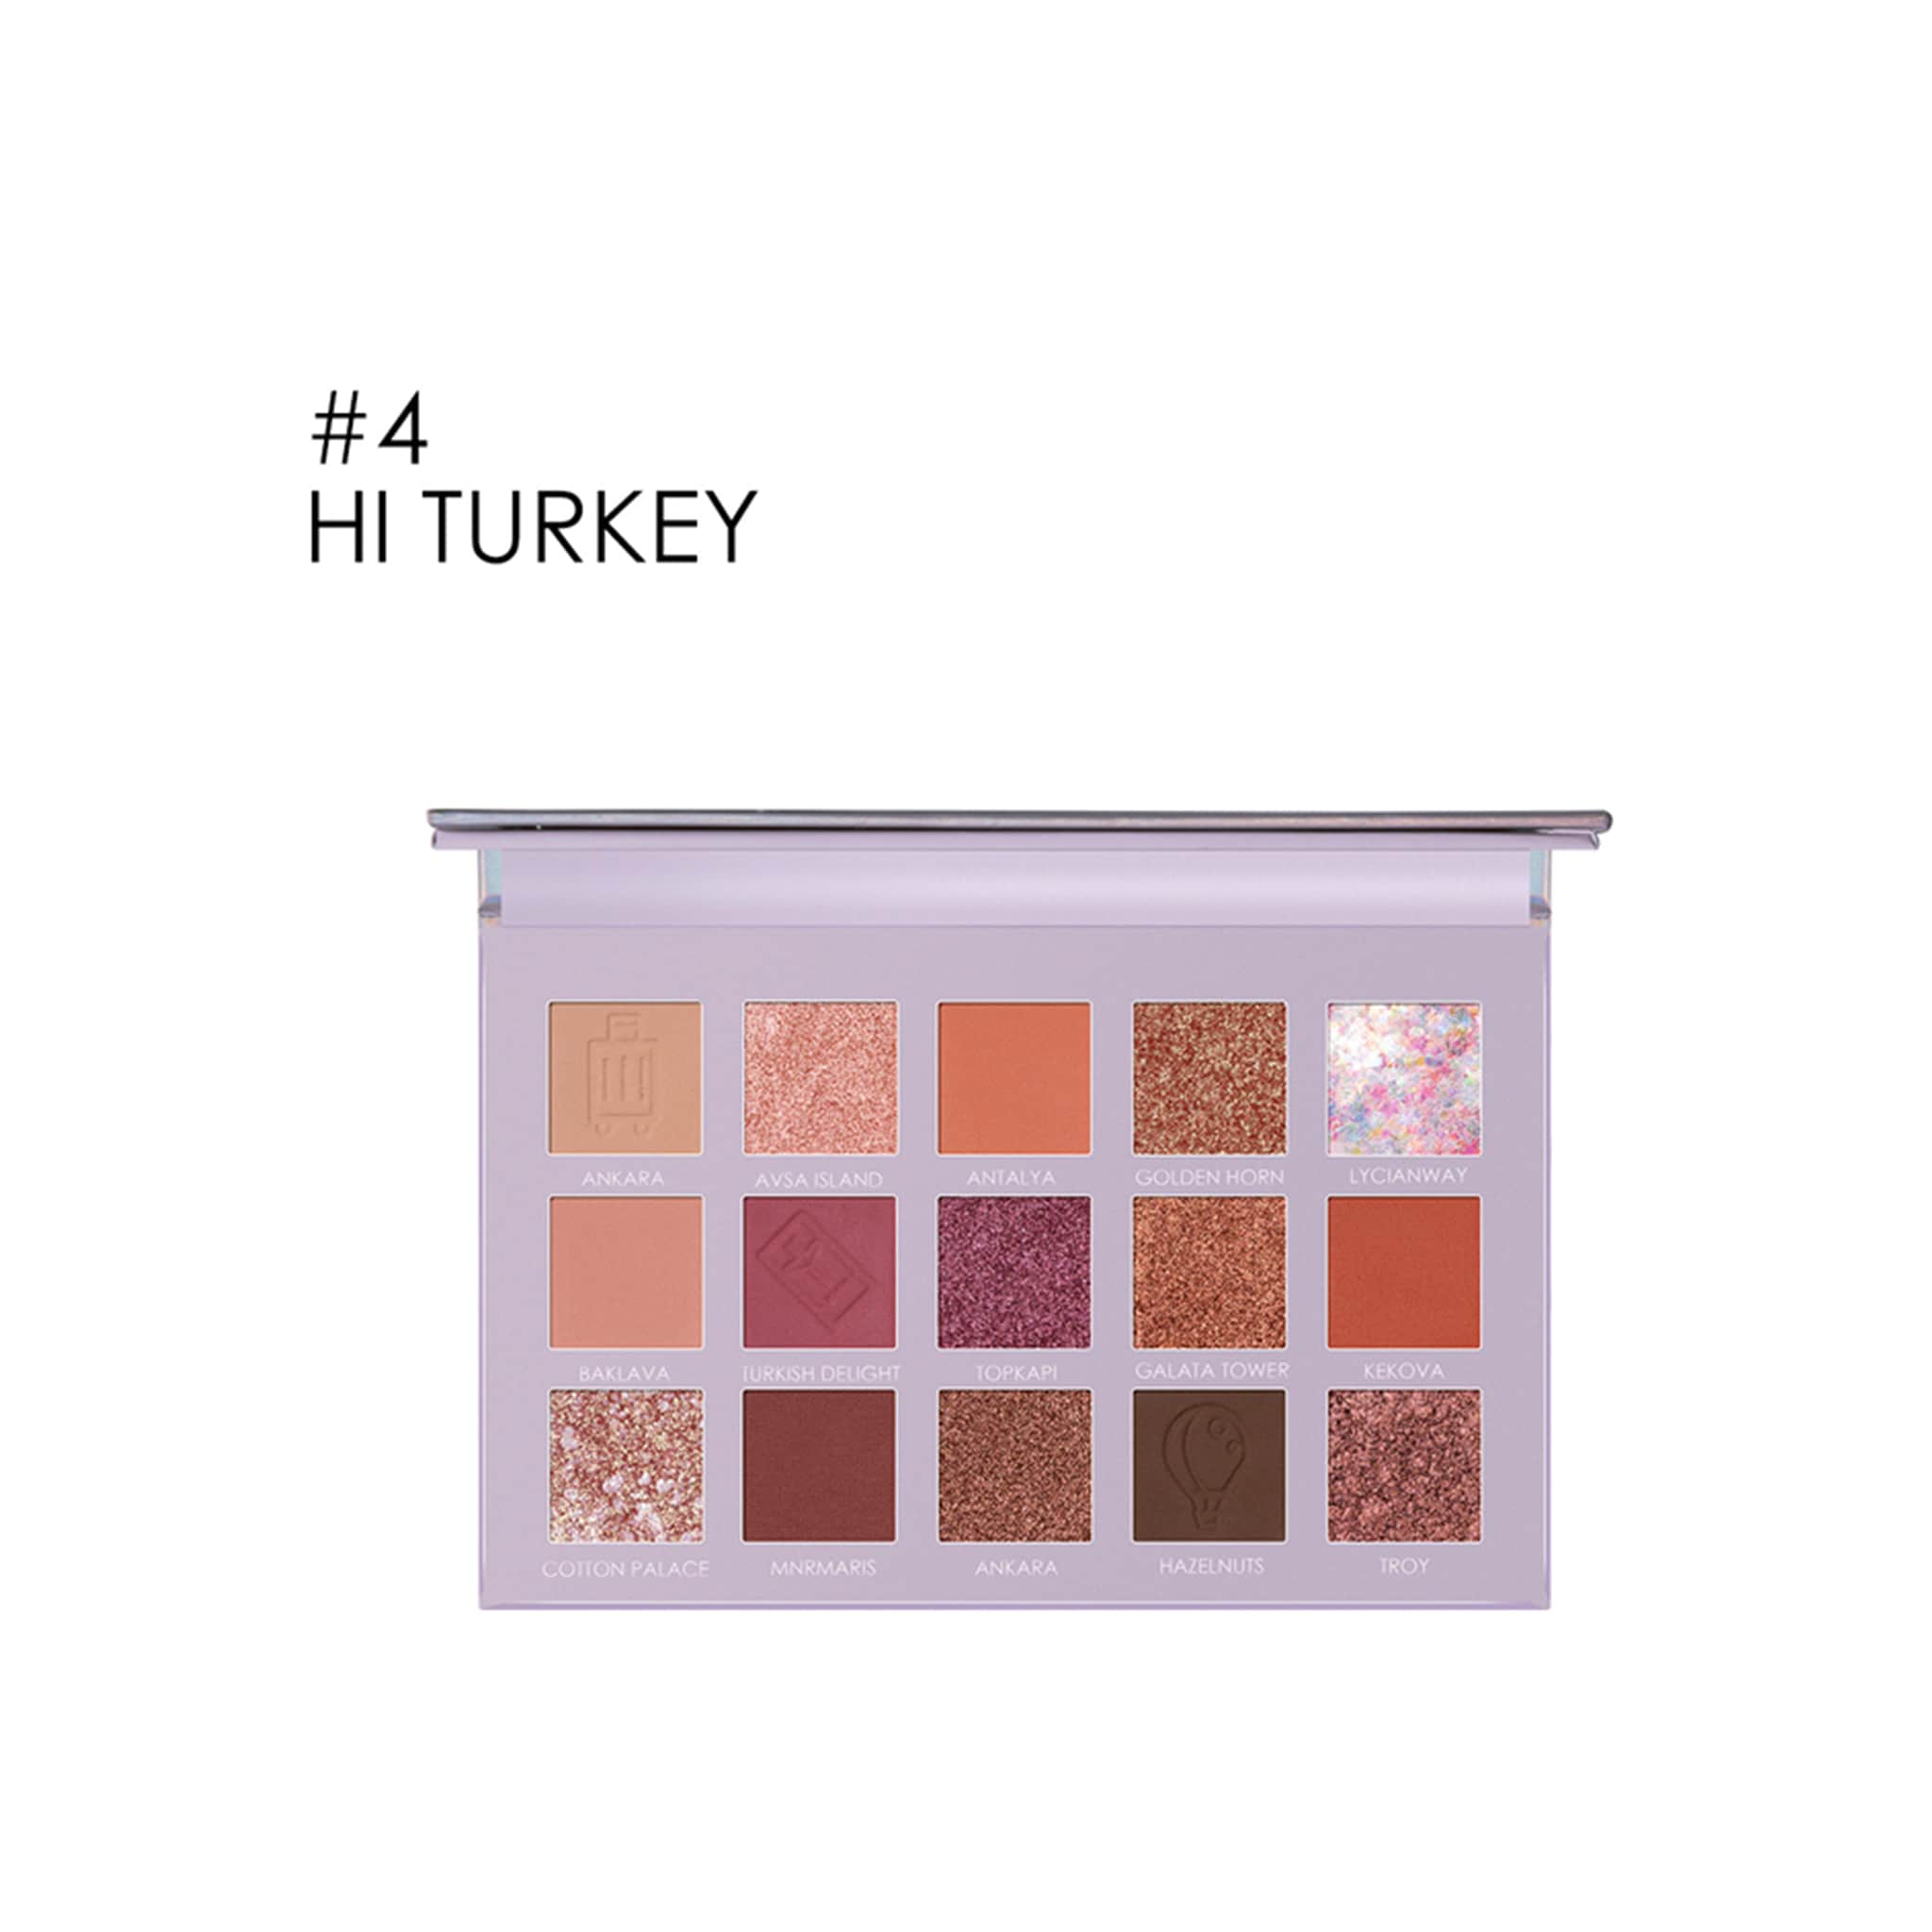 15 Pan eyeshadow Turkey Palette